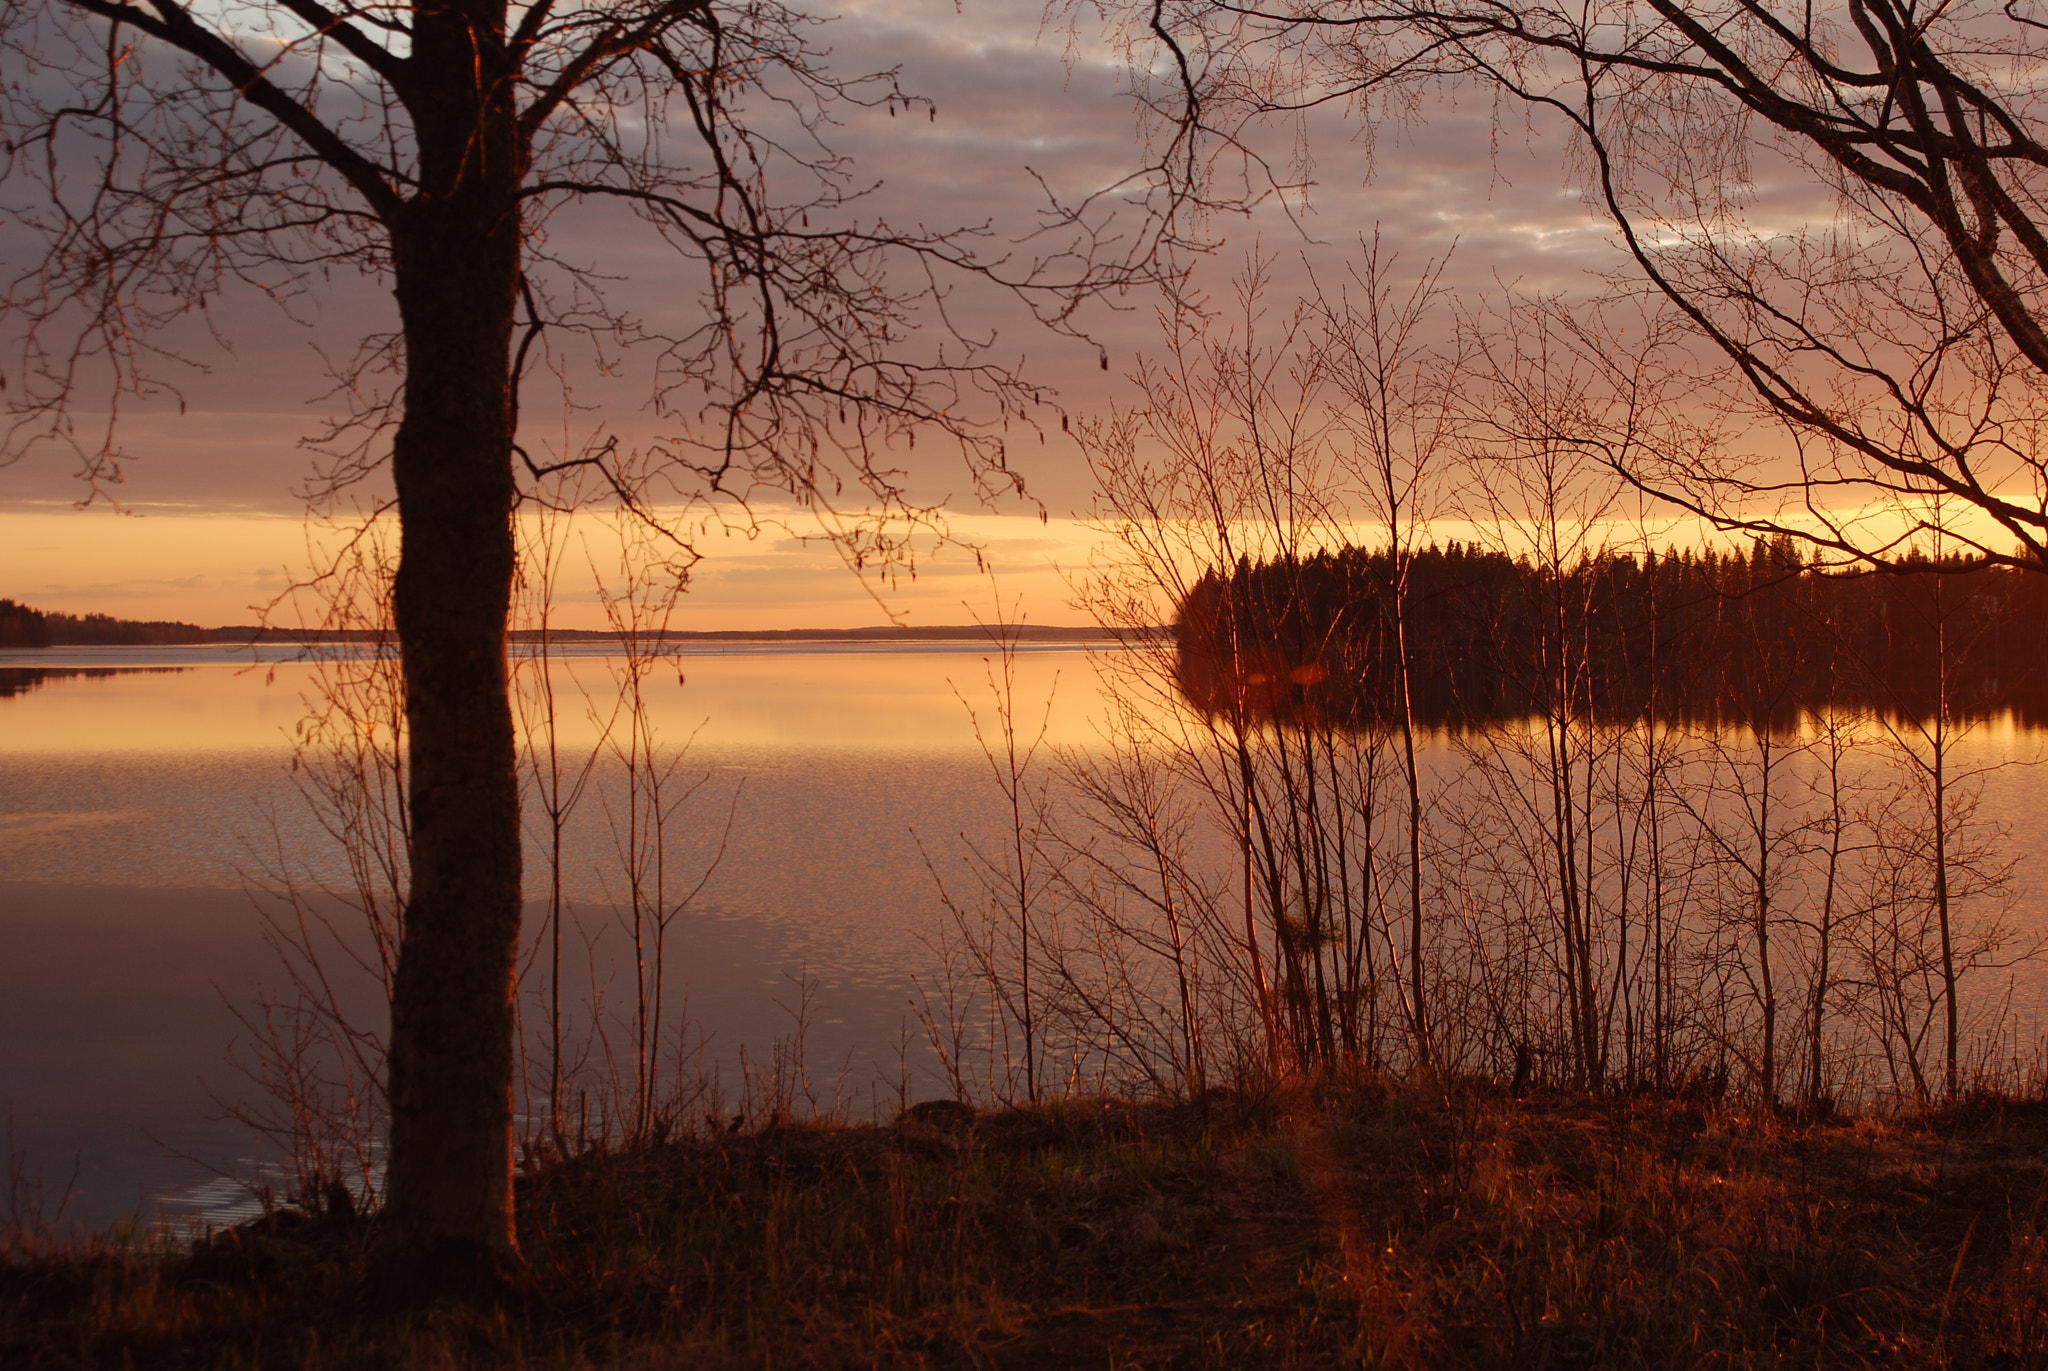 Nikon D80 + AF Zoom-Nikkor 28-105mm f/3.5-4.5D IF sample photo. Lake porovesi sunset photography